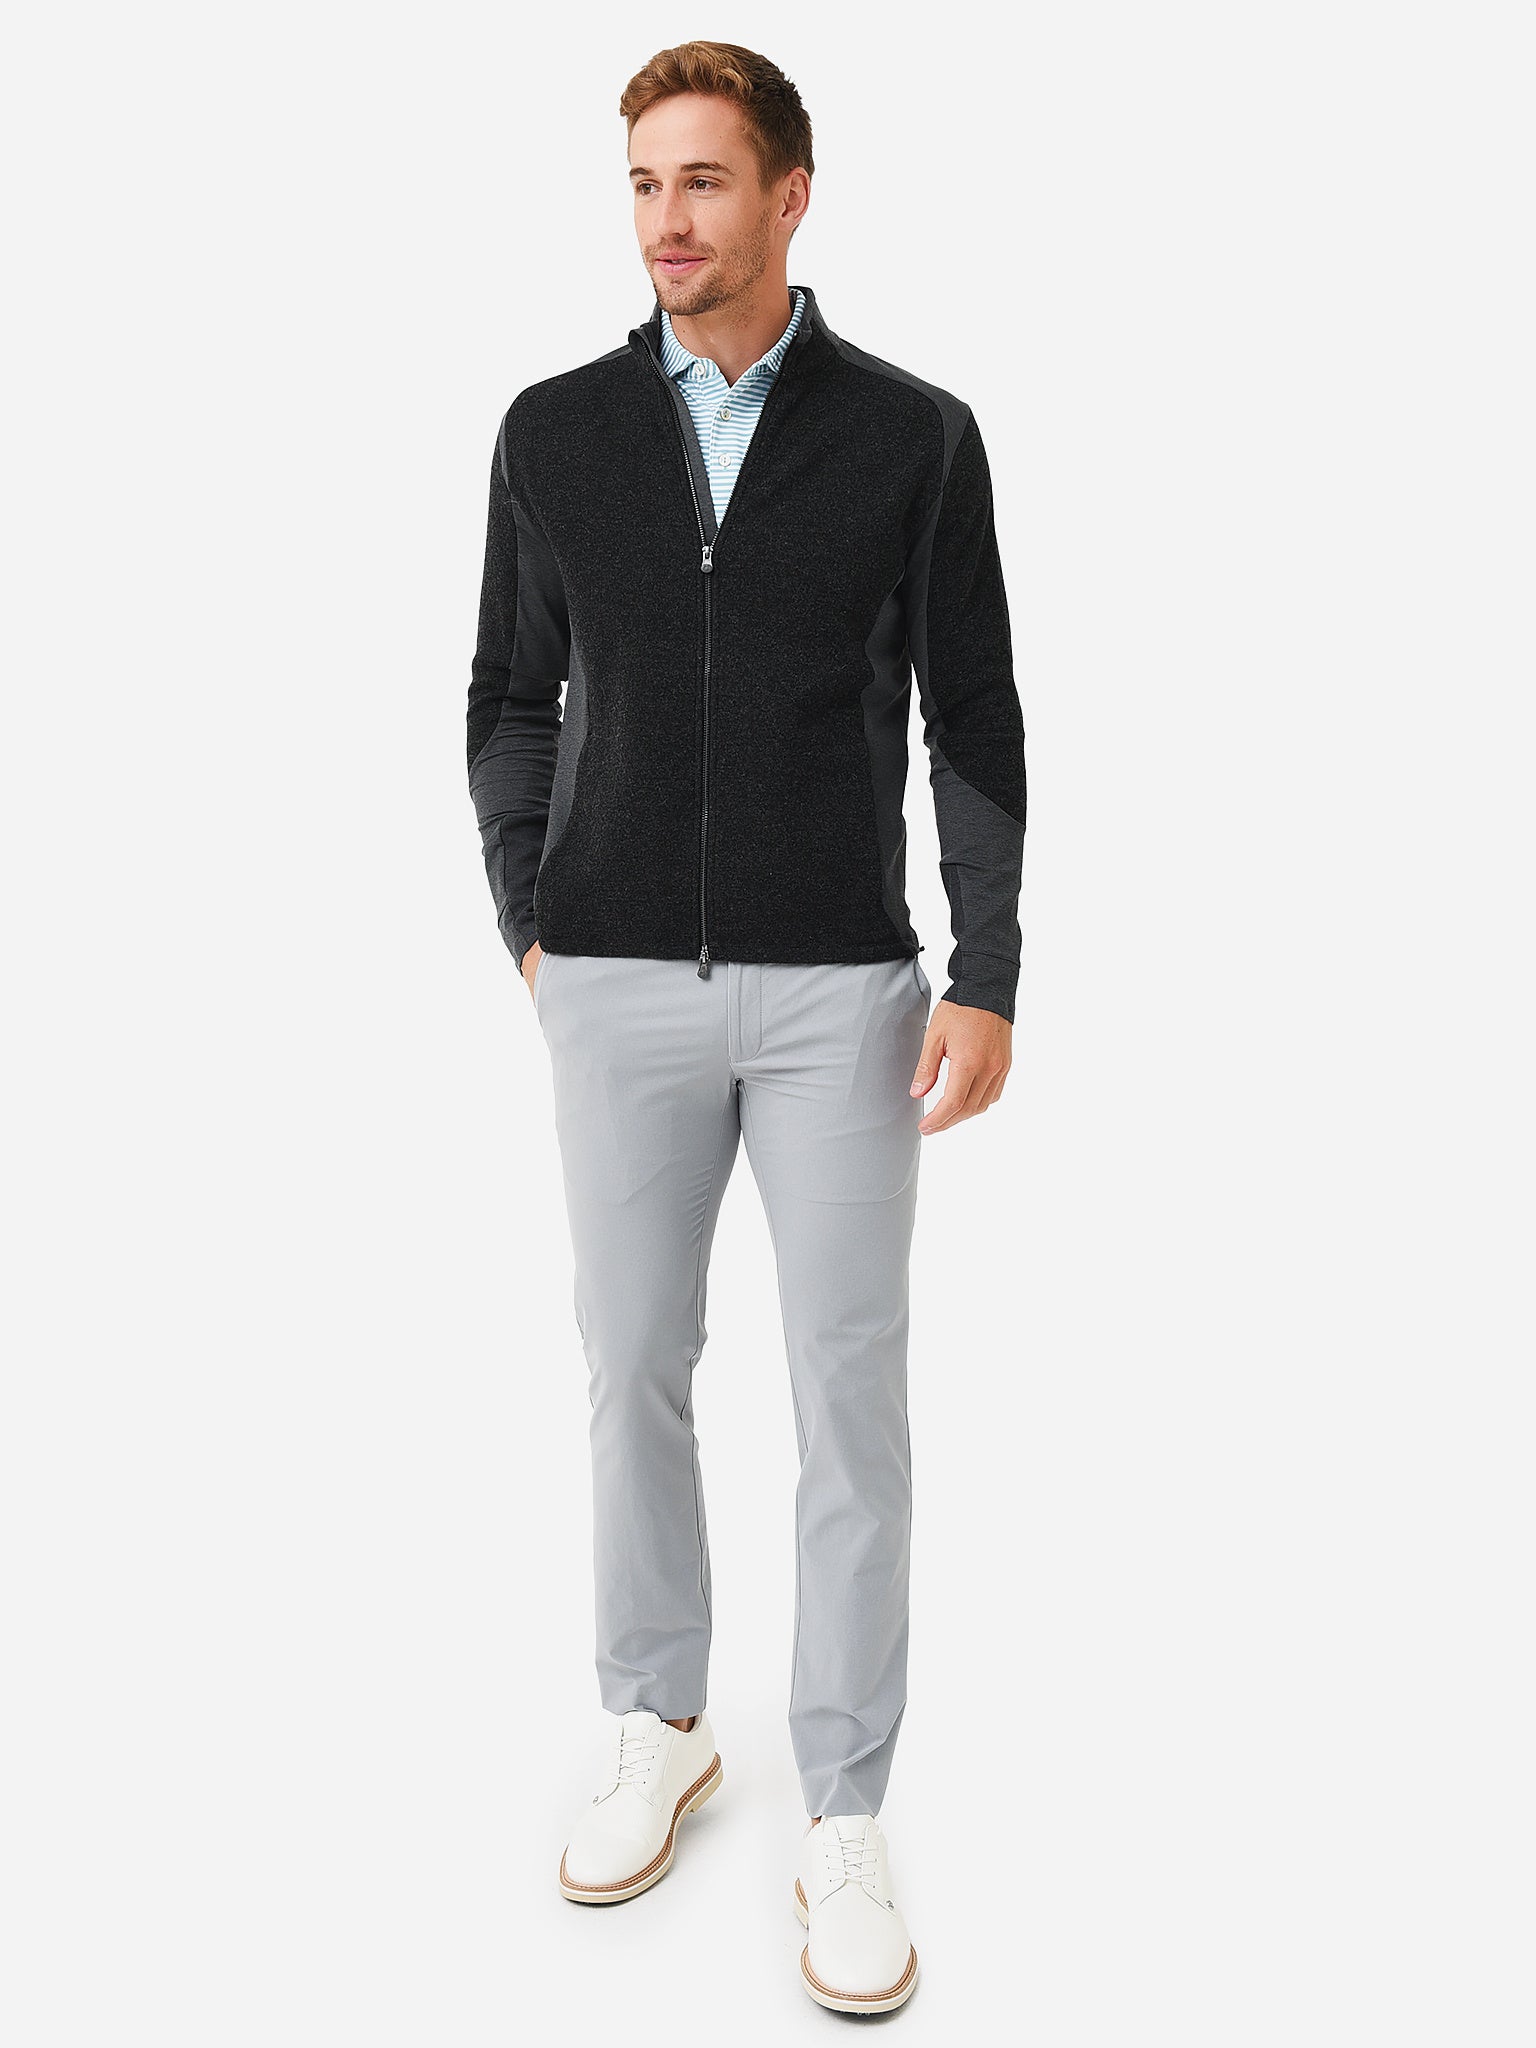 Greyson Men's Sequoia Luxe Hybrid Full-Zip Jacket